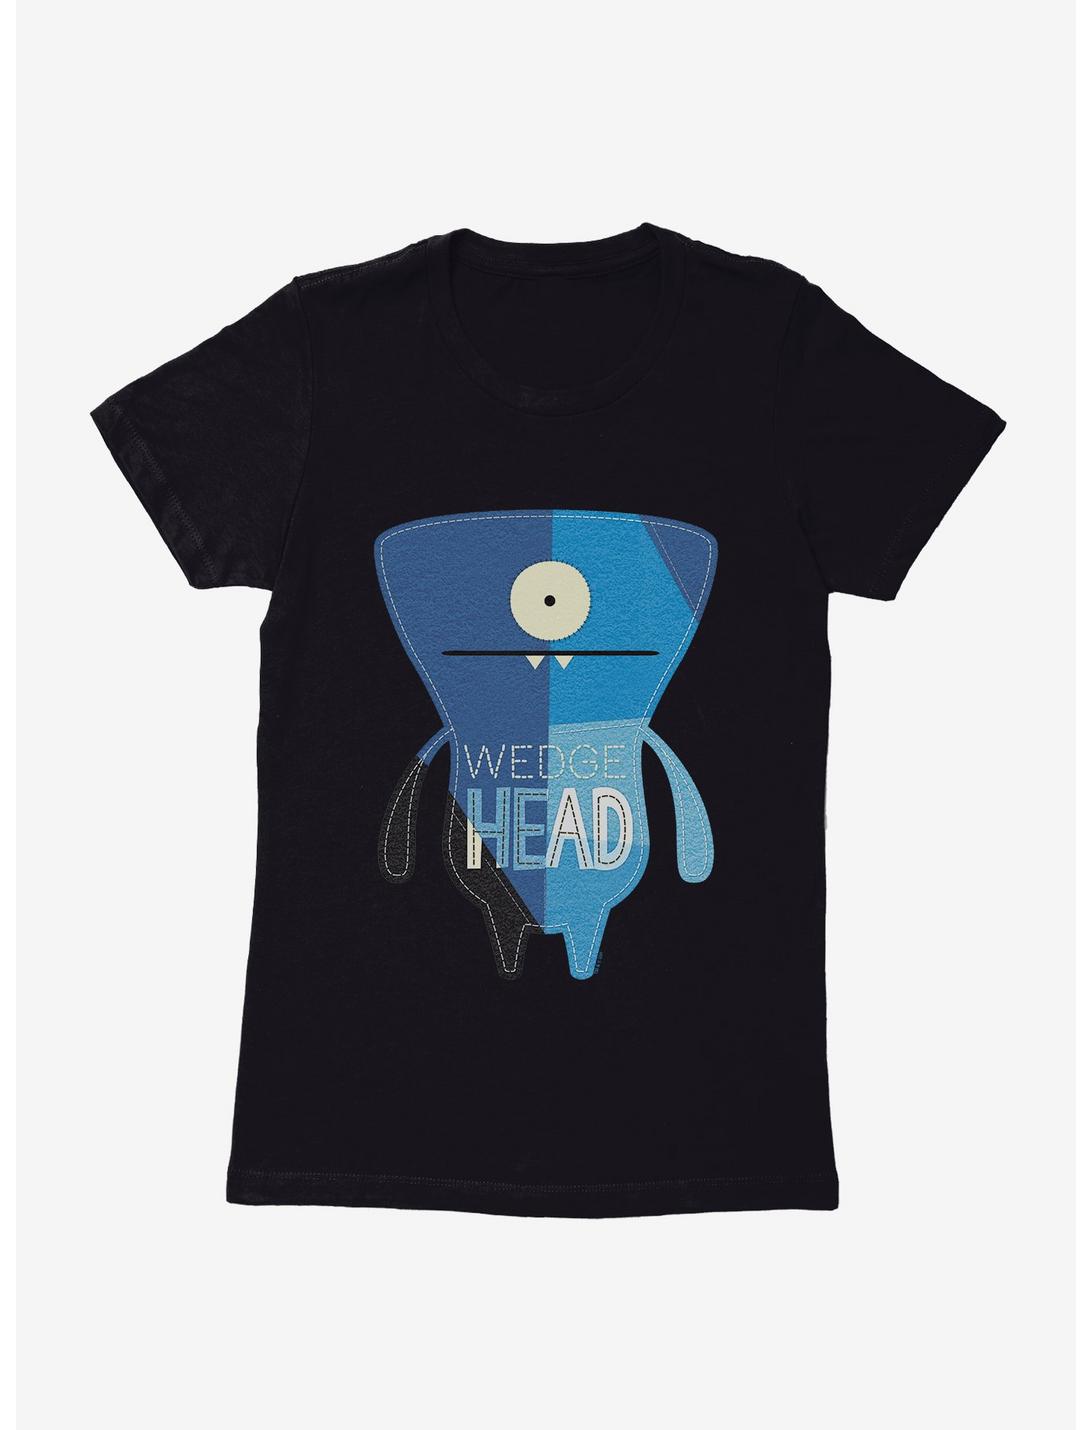 UglyDolls Wedgehead Color Block Womens T-Shirt, BLACK, hi-res